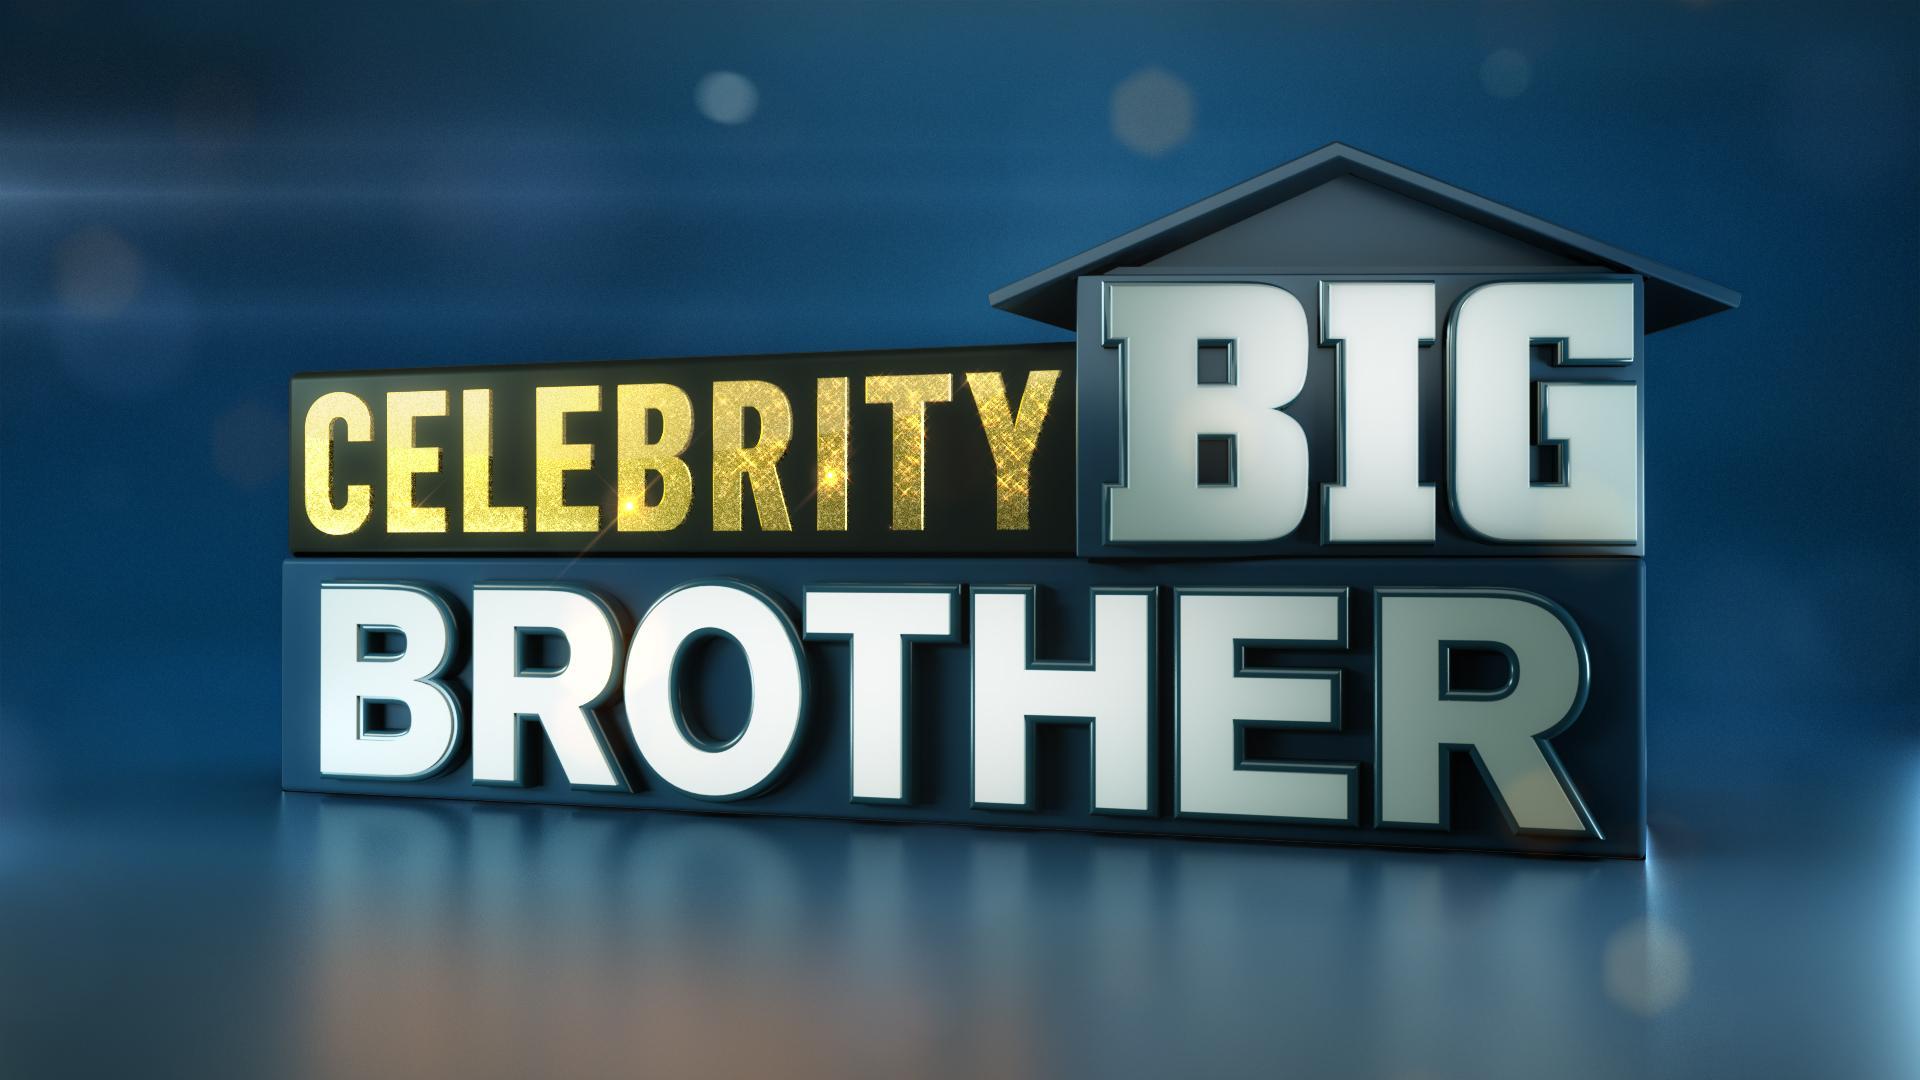 Brother Logo - celebrity big brother logo